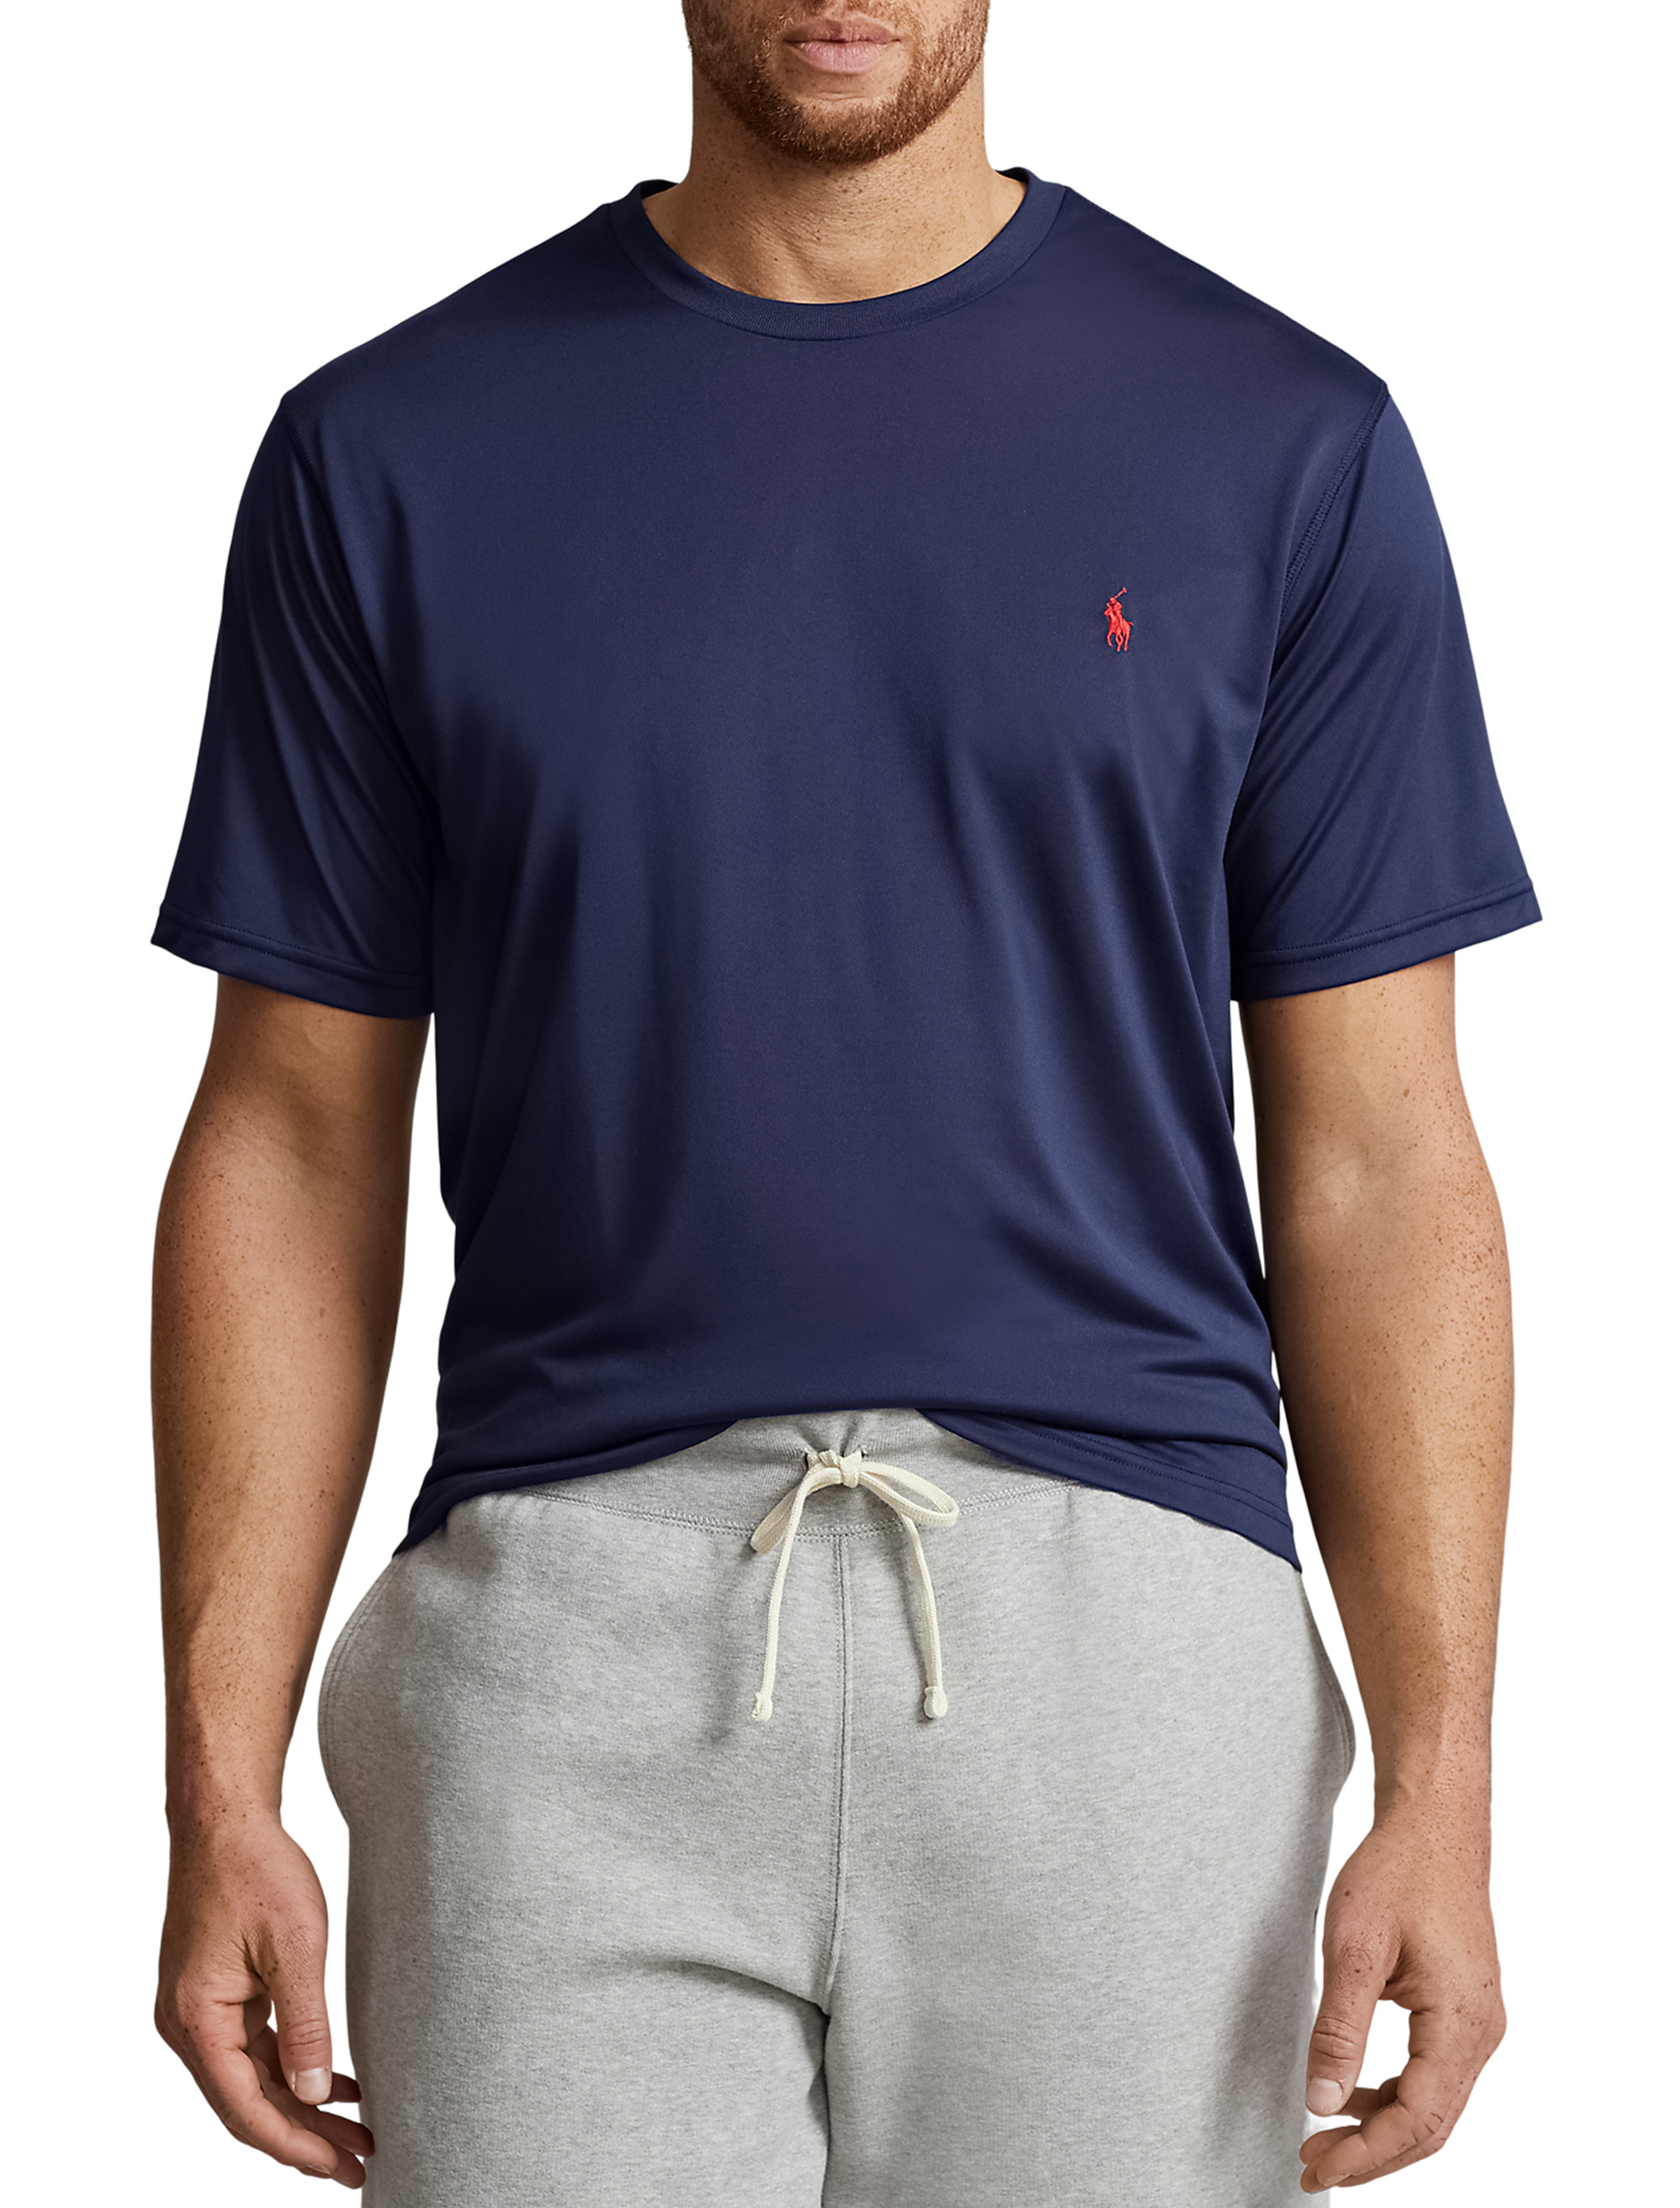 Big + Tall, Polo Ralph Lauren Performance Jersey T-Shirt